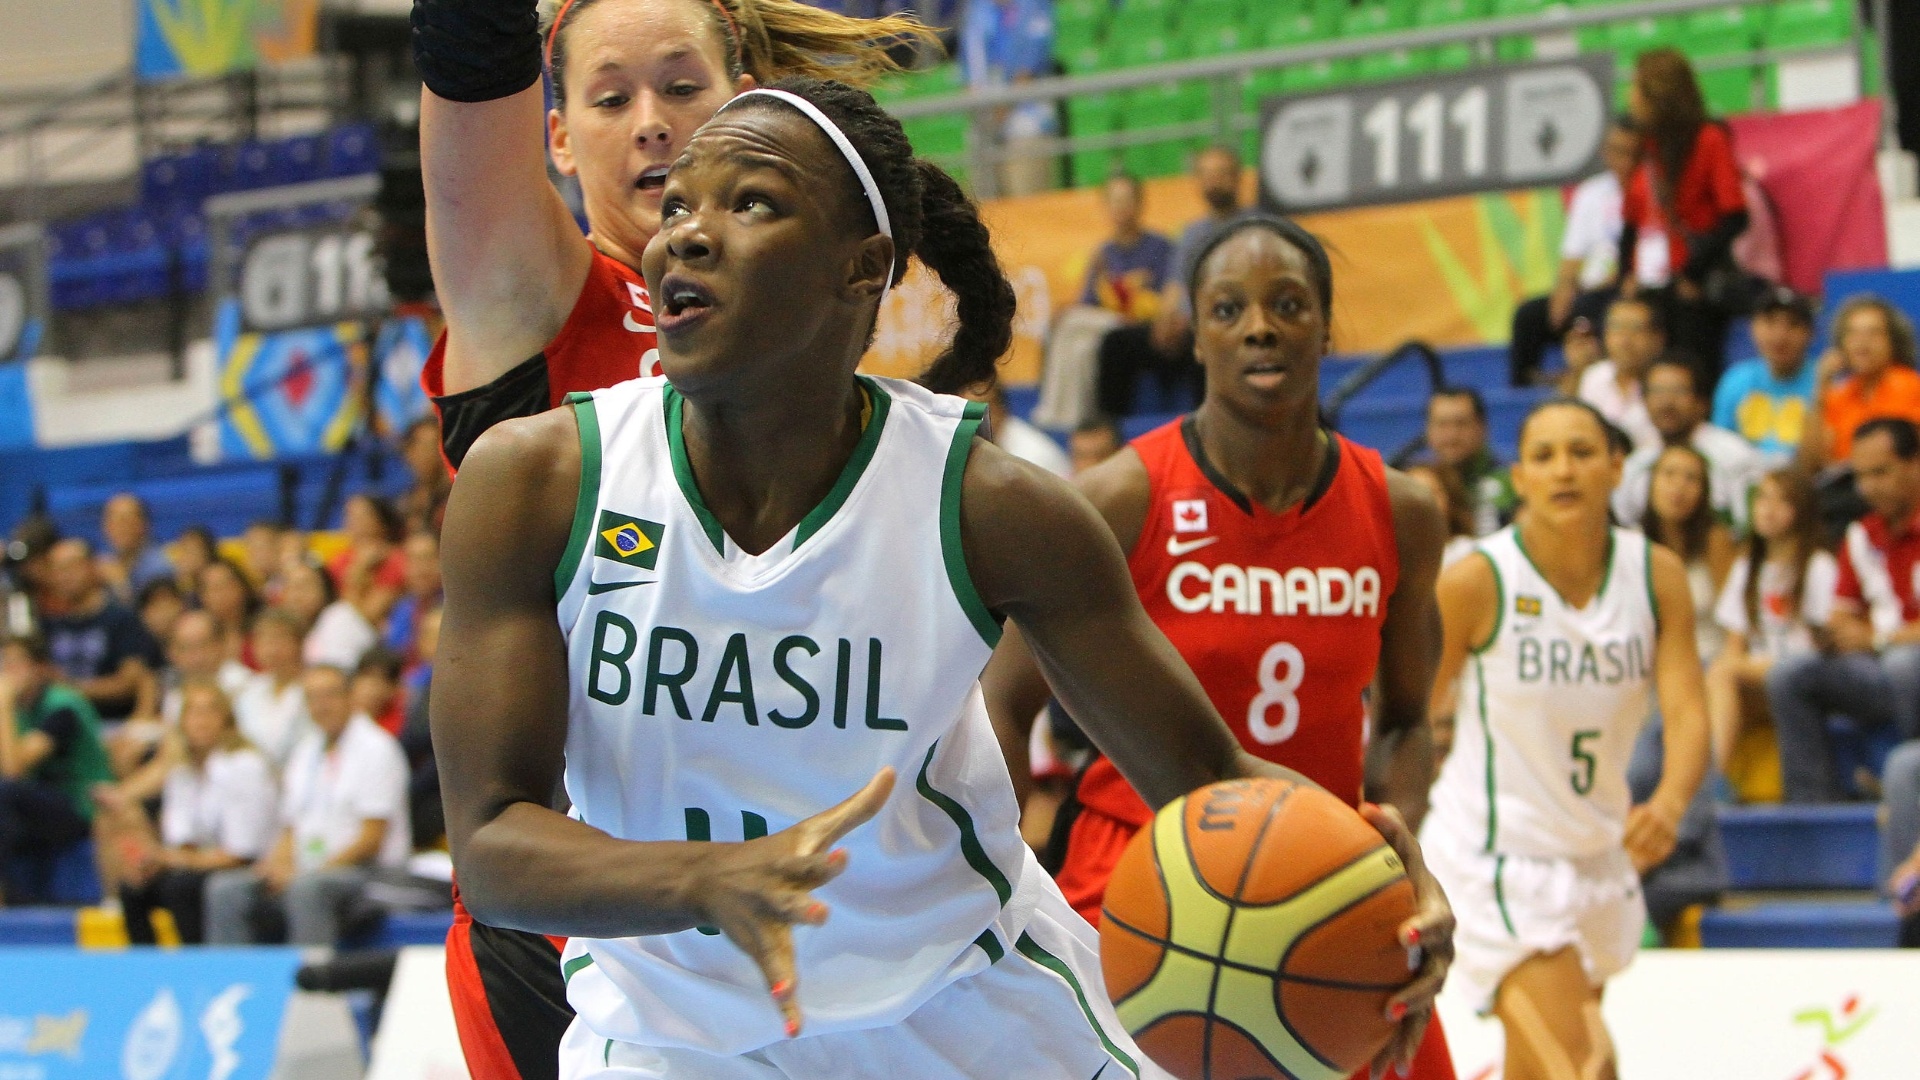 Gilmara controla a bola na partida entre Brasil e Canadá pela abertura do basquete feminino no Pan (21/10/2011)